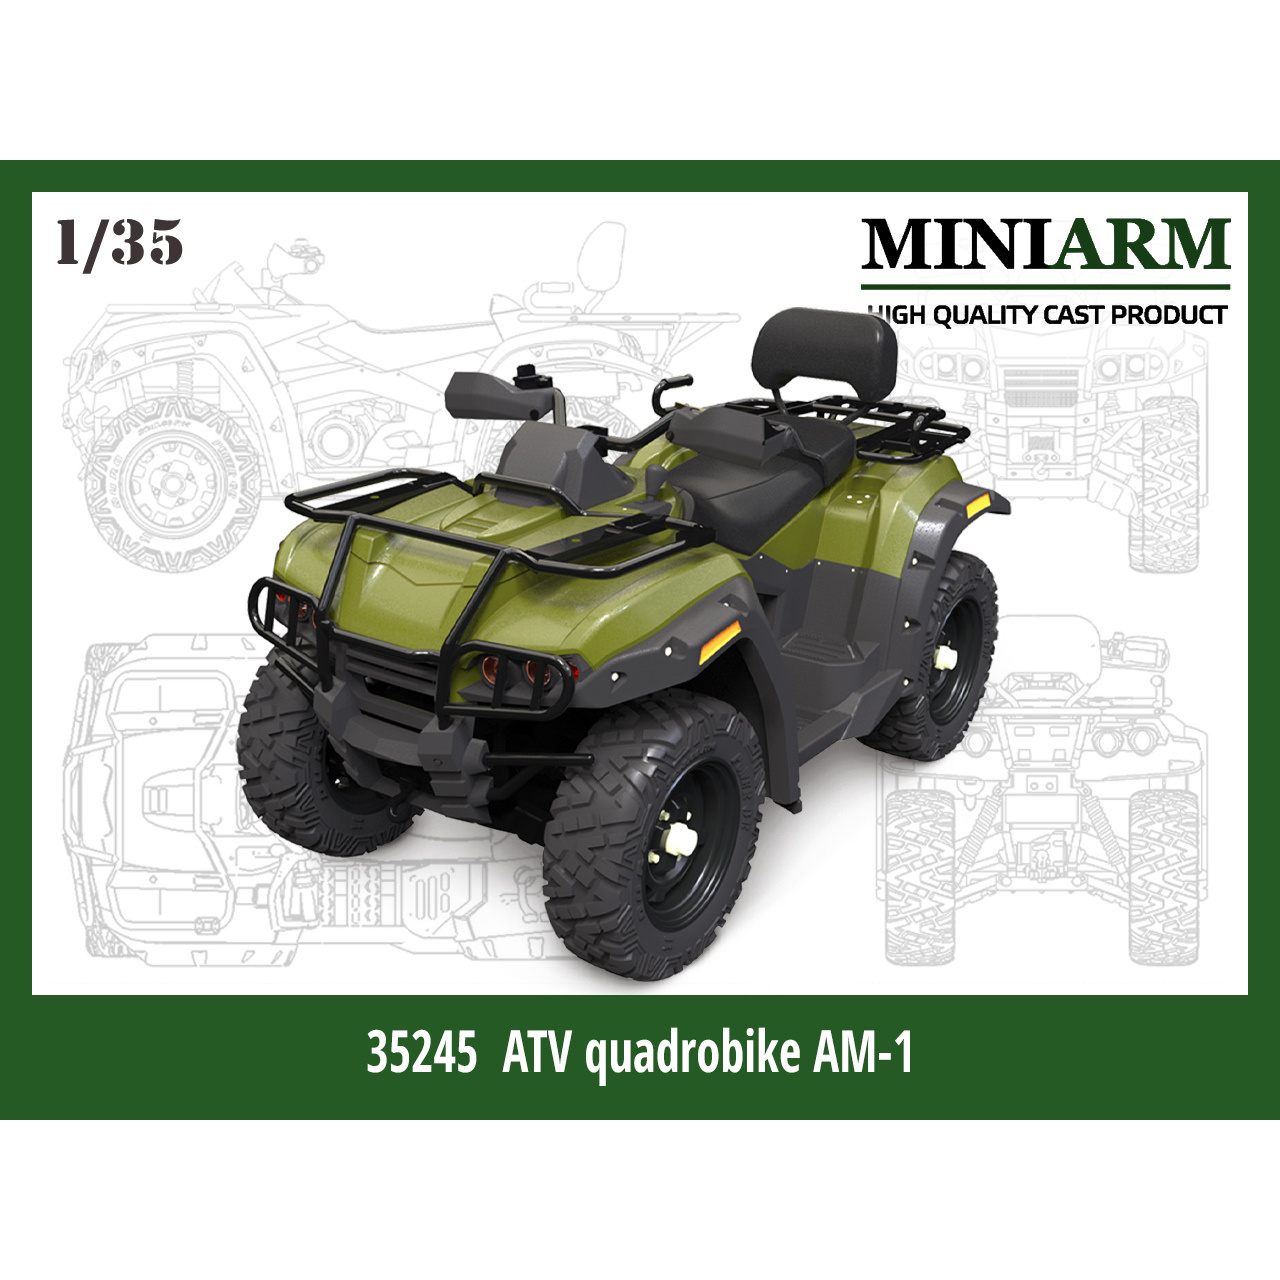 35245 Miniarm 1/35 ATV AM-1